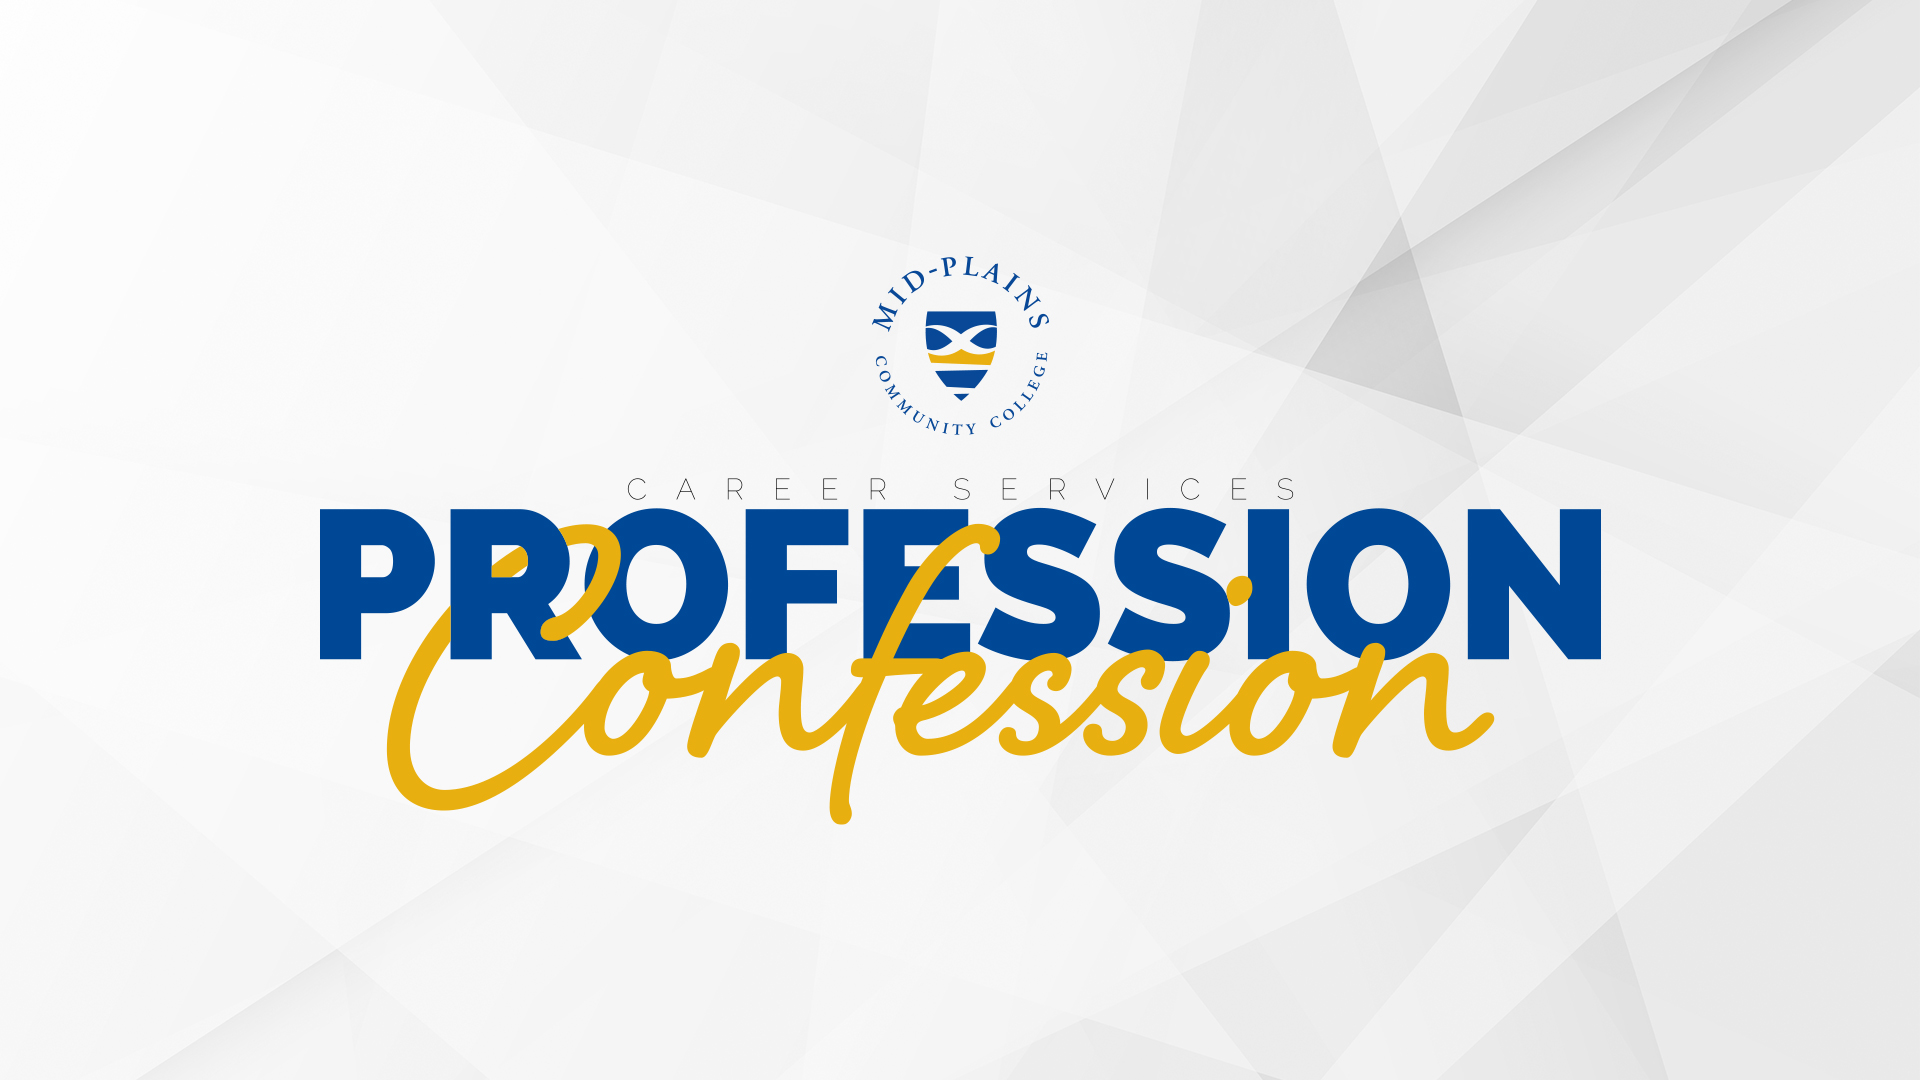 Profession Confession